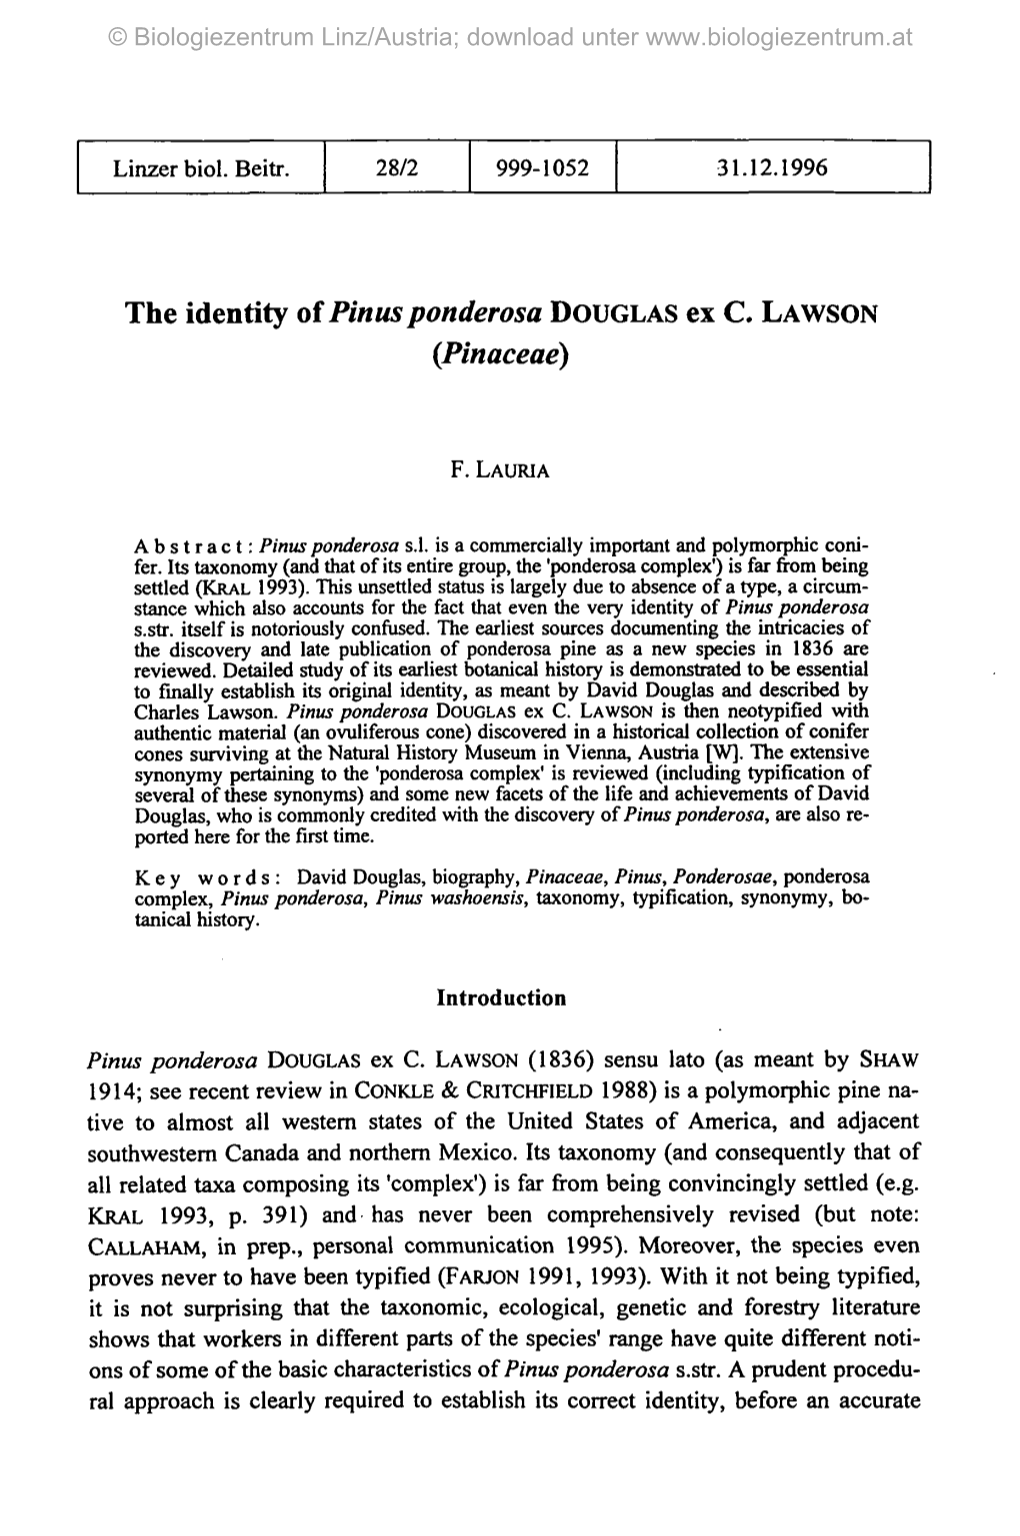 The Identity of Pinusponderosa DOUGLAS Ex C. LAWSON (Pinaceae)